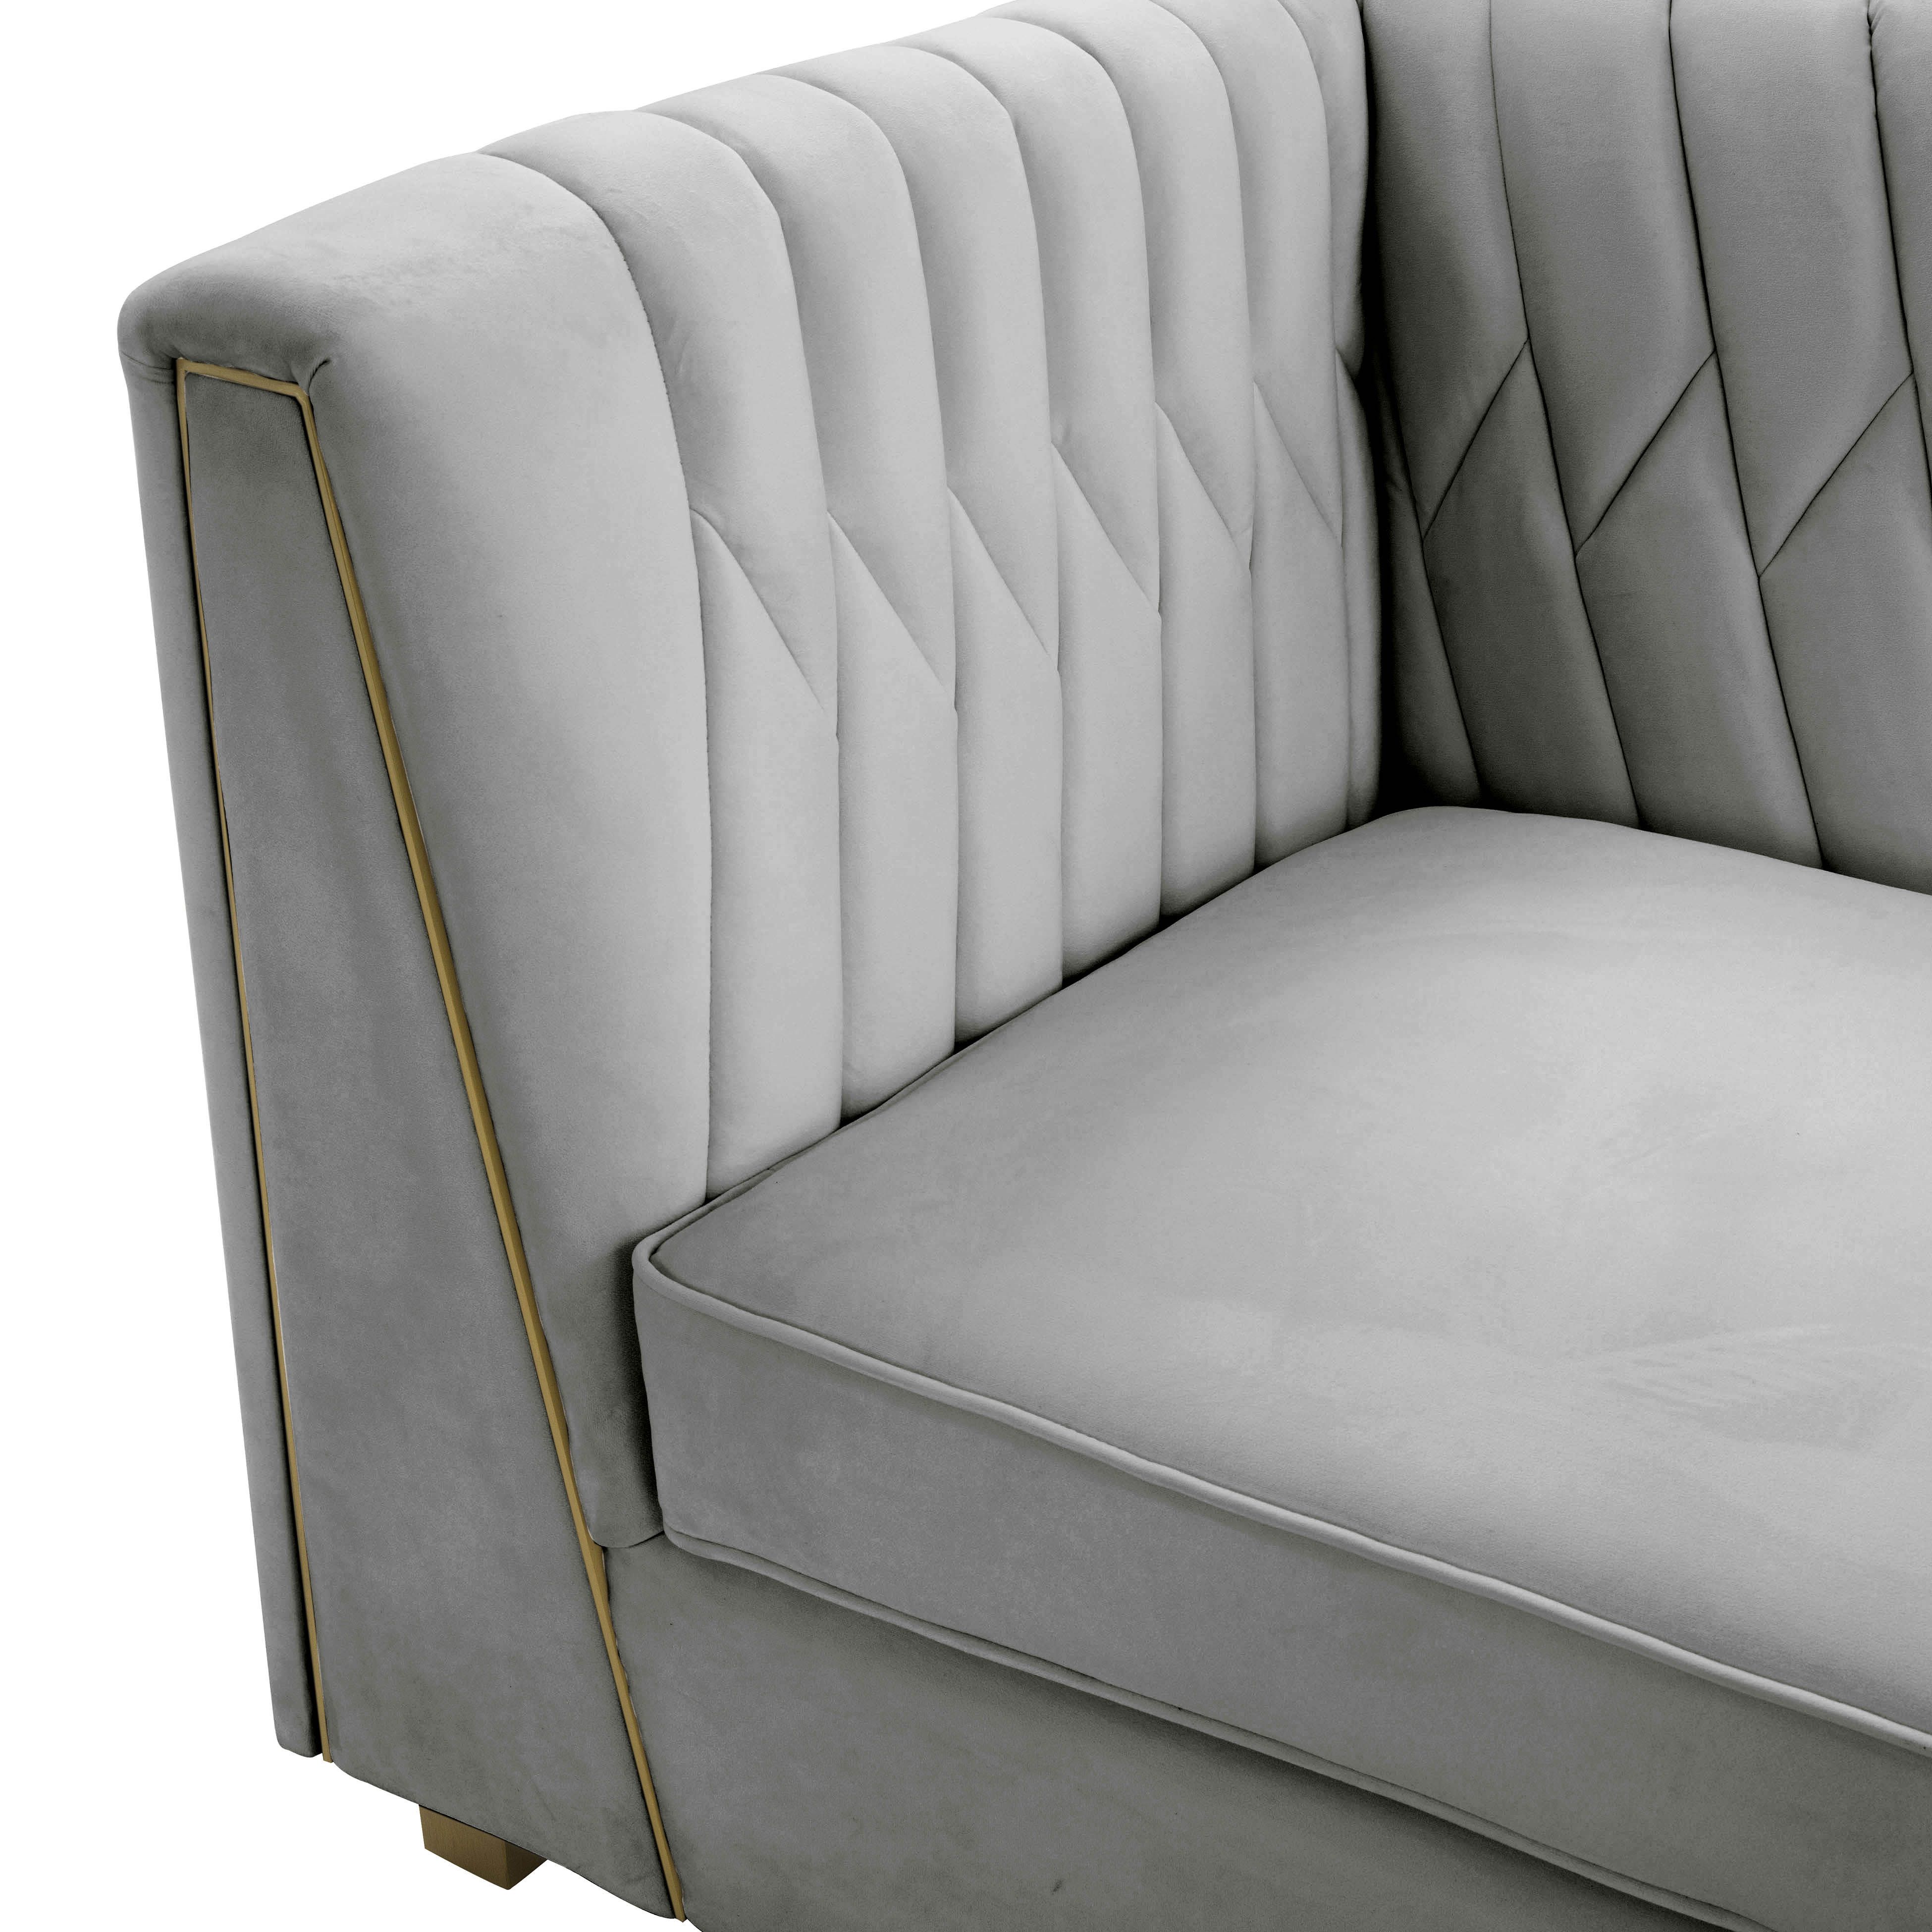 Wafa Light Grey Velvet Sofainspire Me! Home Decor – Tov Furniture Within Light Gray Velvet Sofas (Photo 2 of 15)